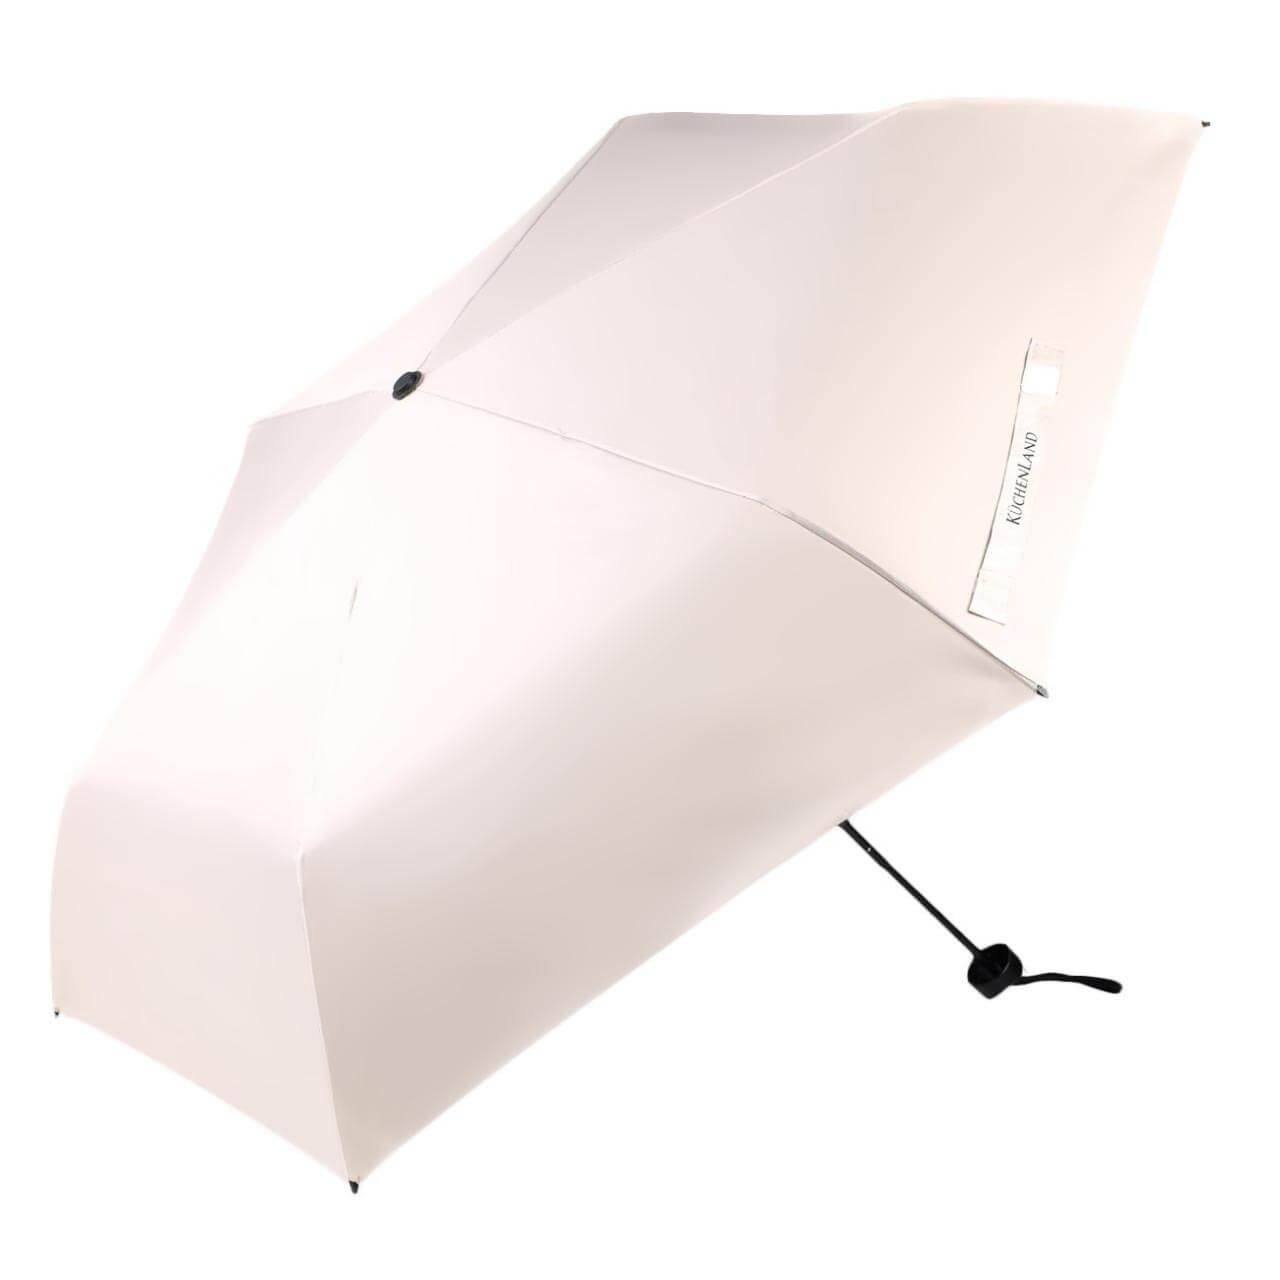 Зонт, 52 см, складной, двусторонний, эпонж, бежево-черный, Rainy day складной зонт zuodu